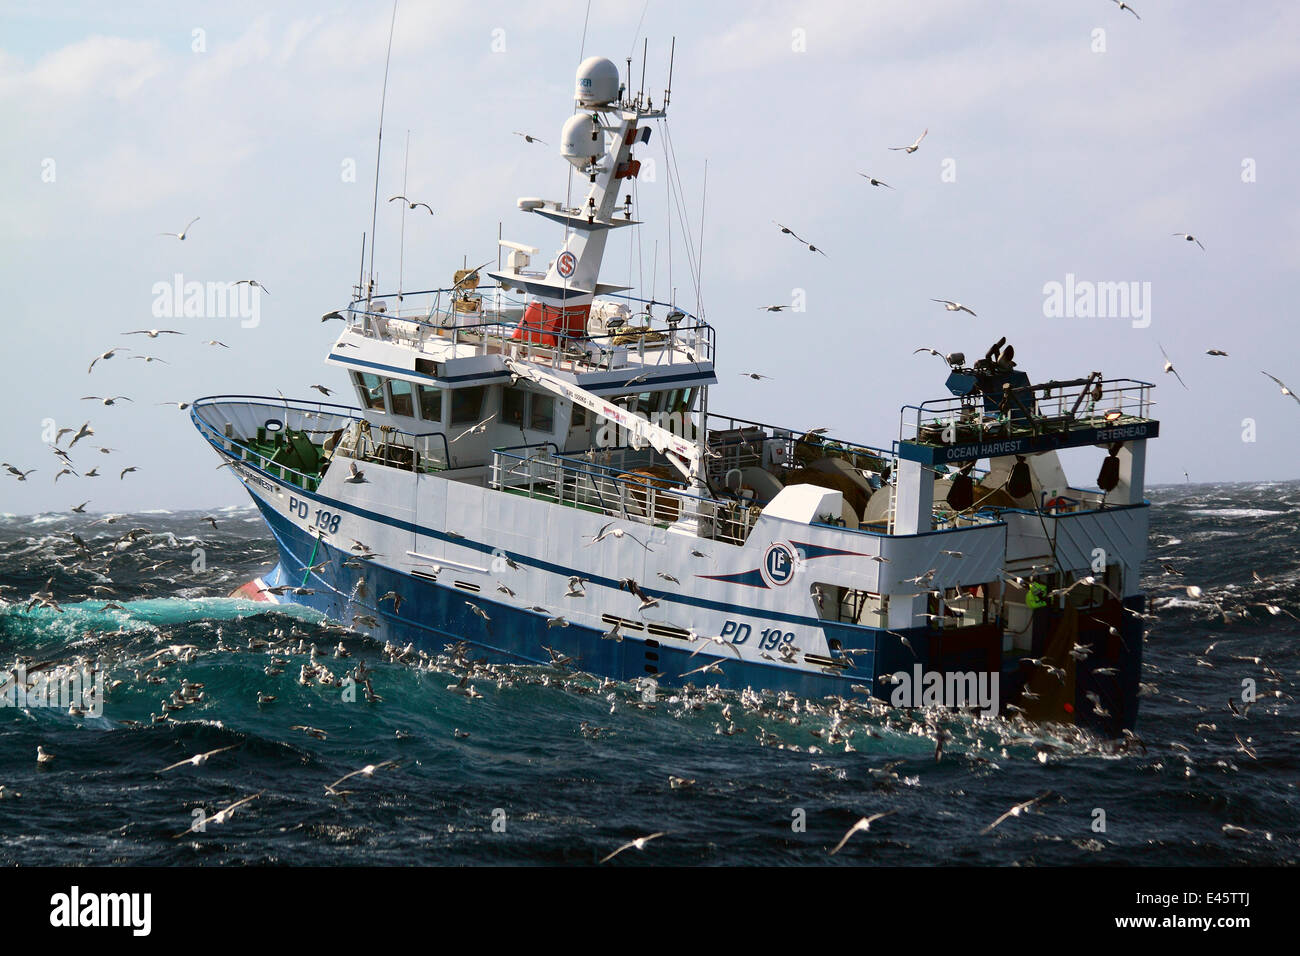 Fischkutter, umgeben von Seevögeln wie das Netz an Bord gezogen wird. Nordsee, September 2010. Eigentum freigegeben. Stockfoto